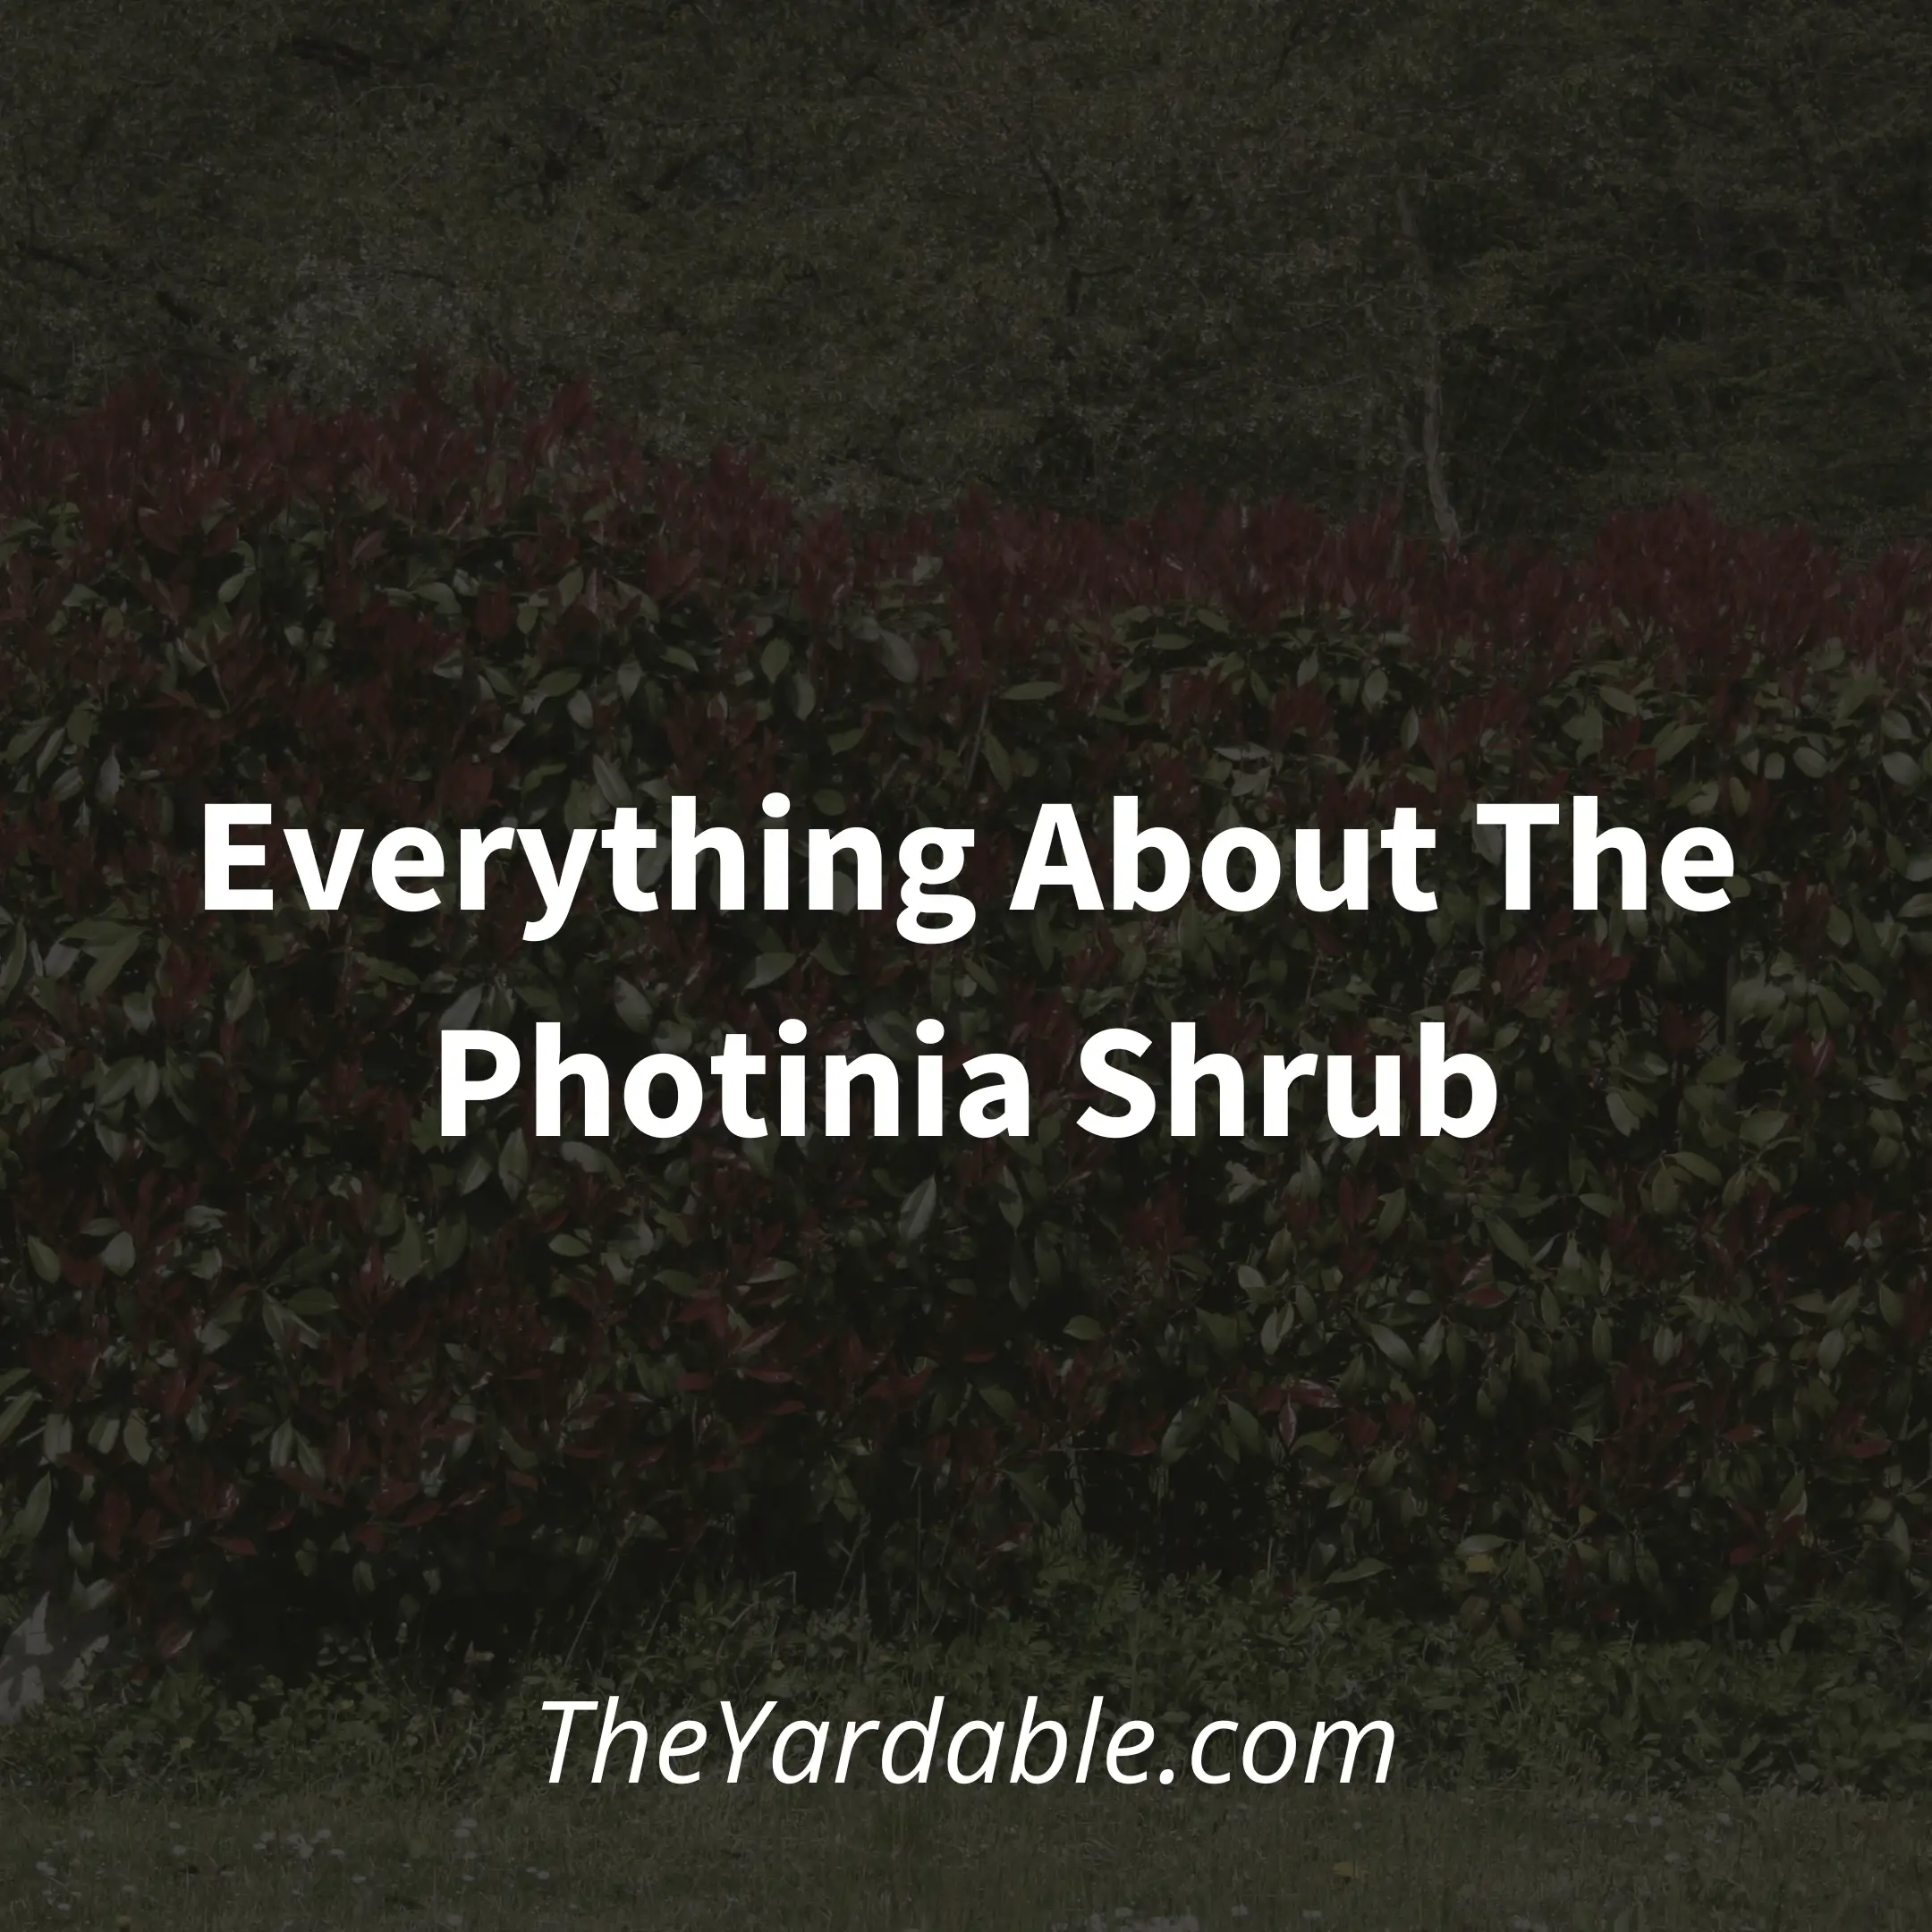 Red Tip Photinia: Everything About The Photinia Shrub